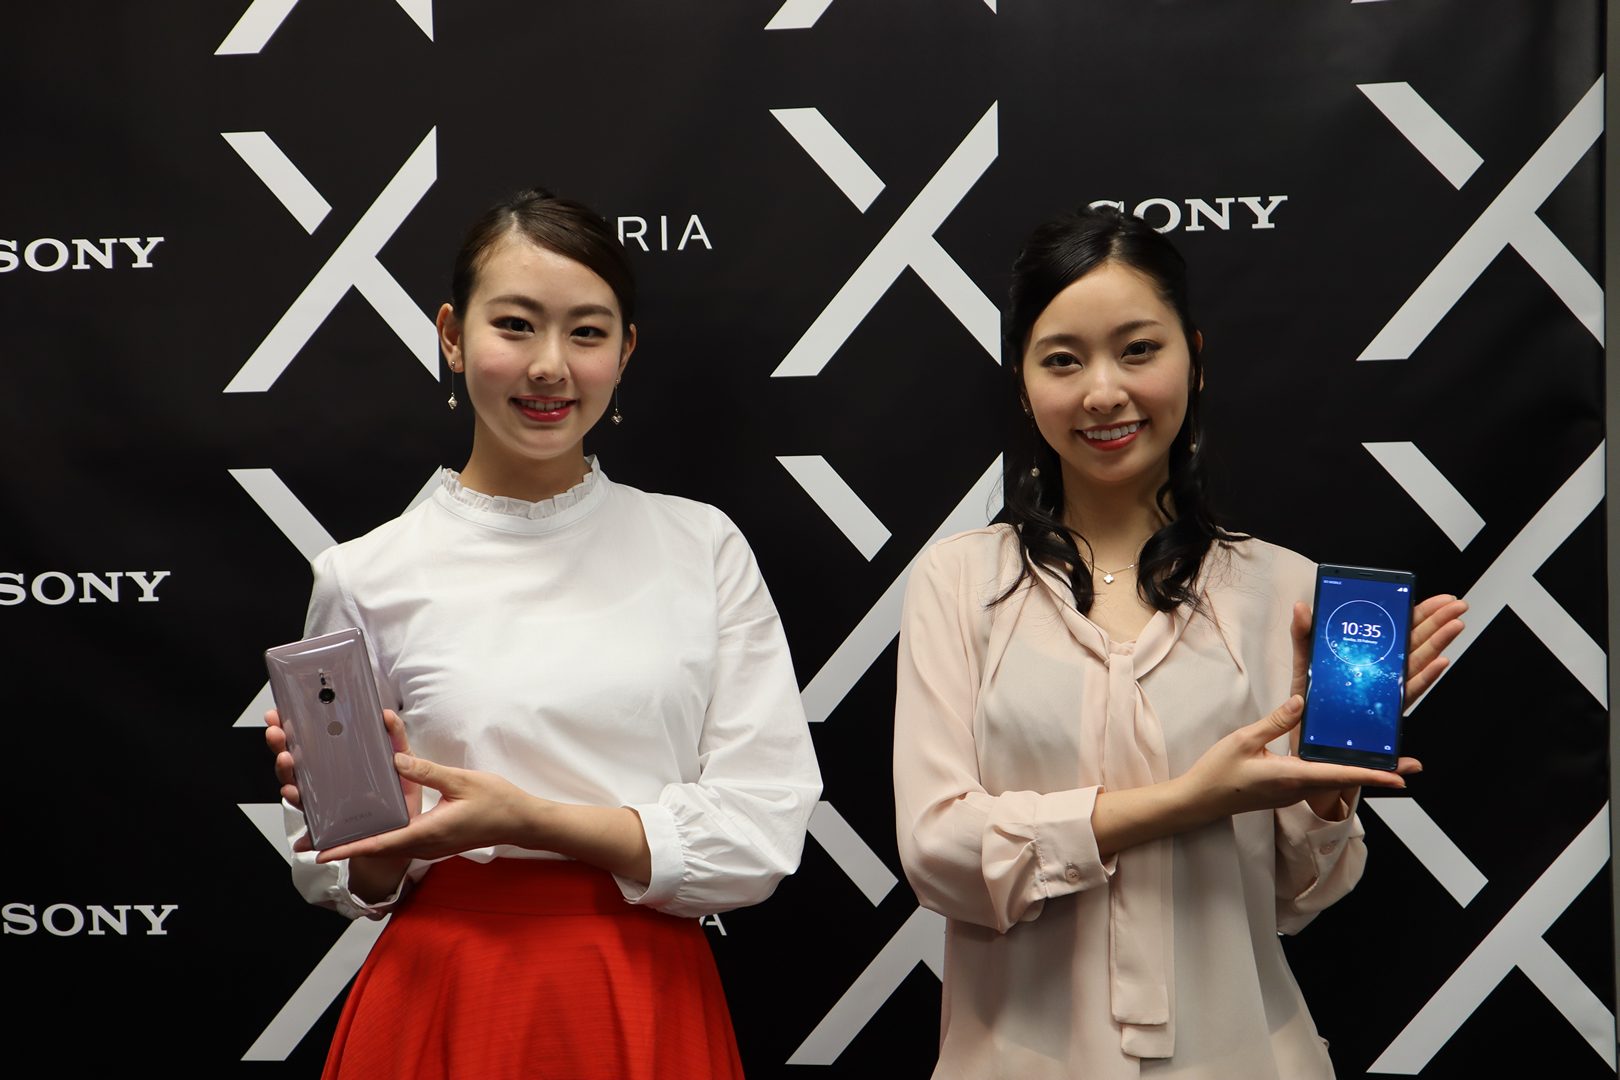 แบไต๋ลุยอุตลุดไปกับ Sony ในญี่ปุ่น รู้จัก Dynamic Vibration System ระบบสั่นและความบันเทิงของ XZ2